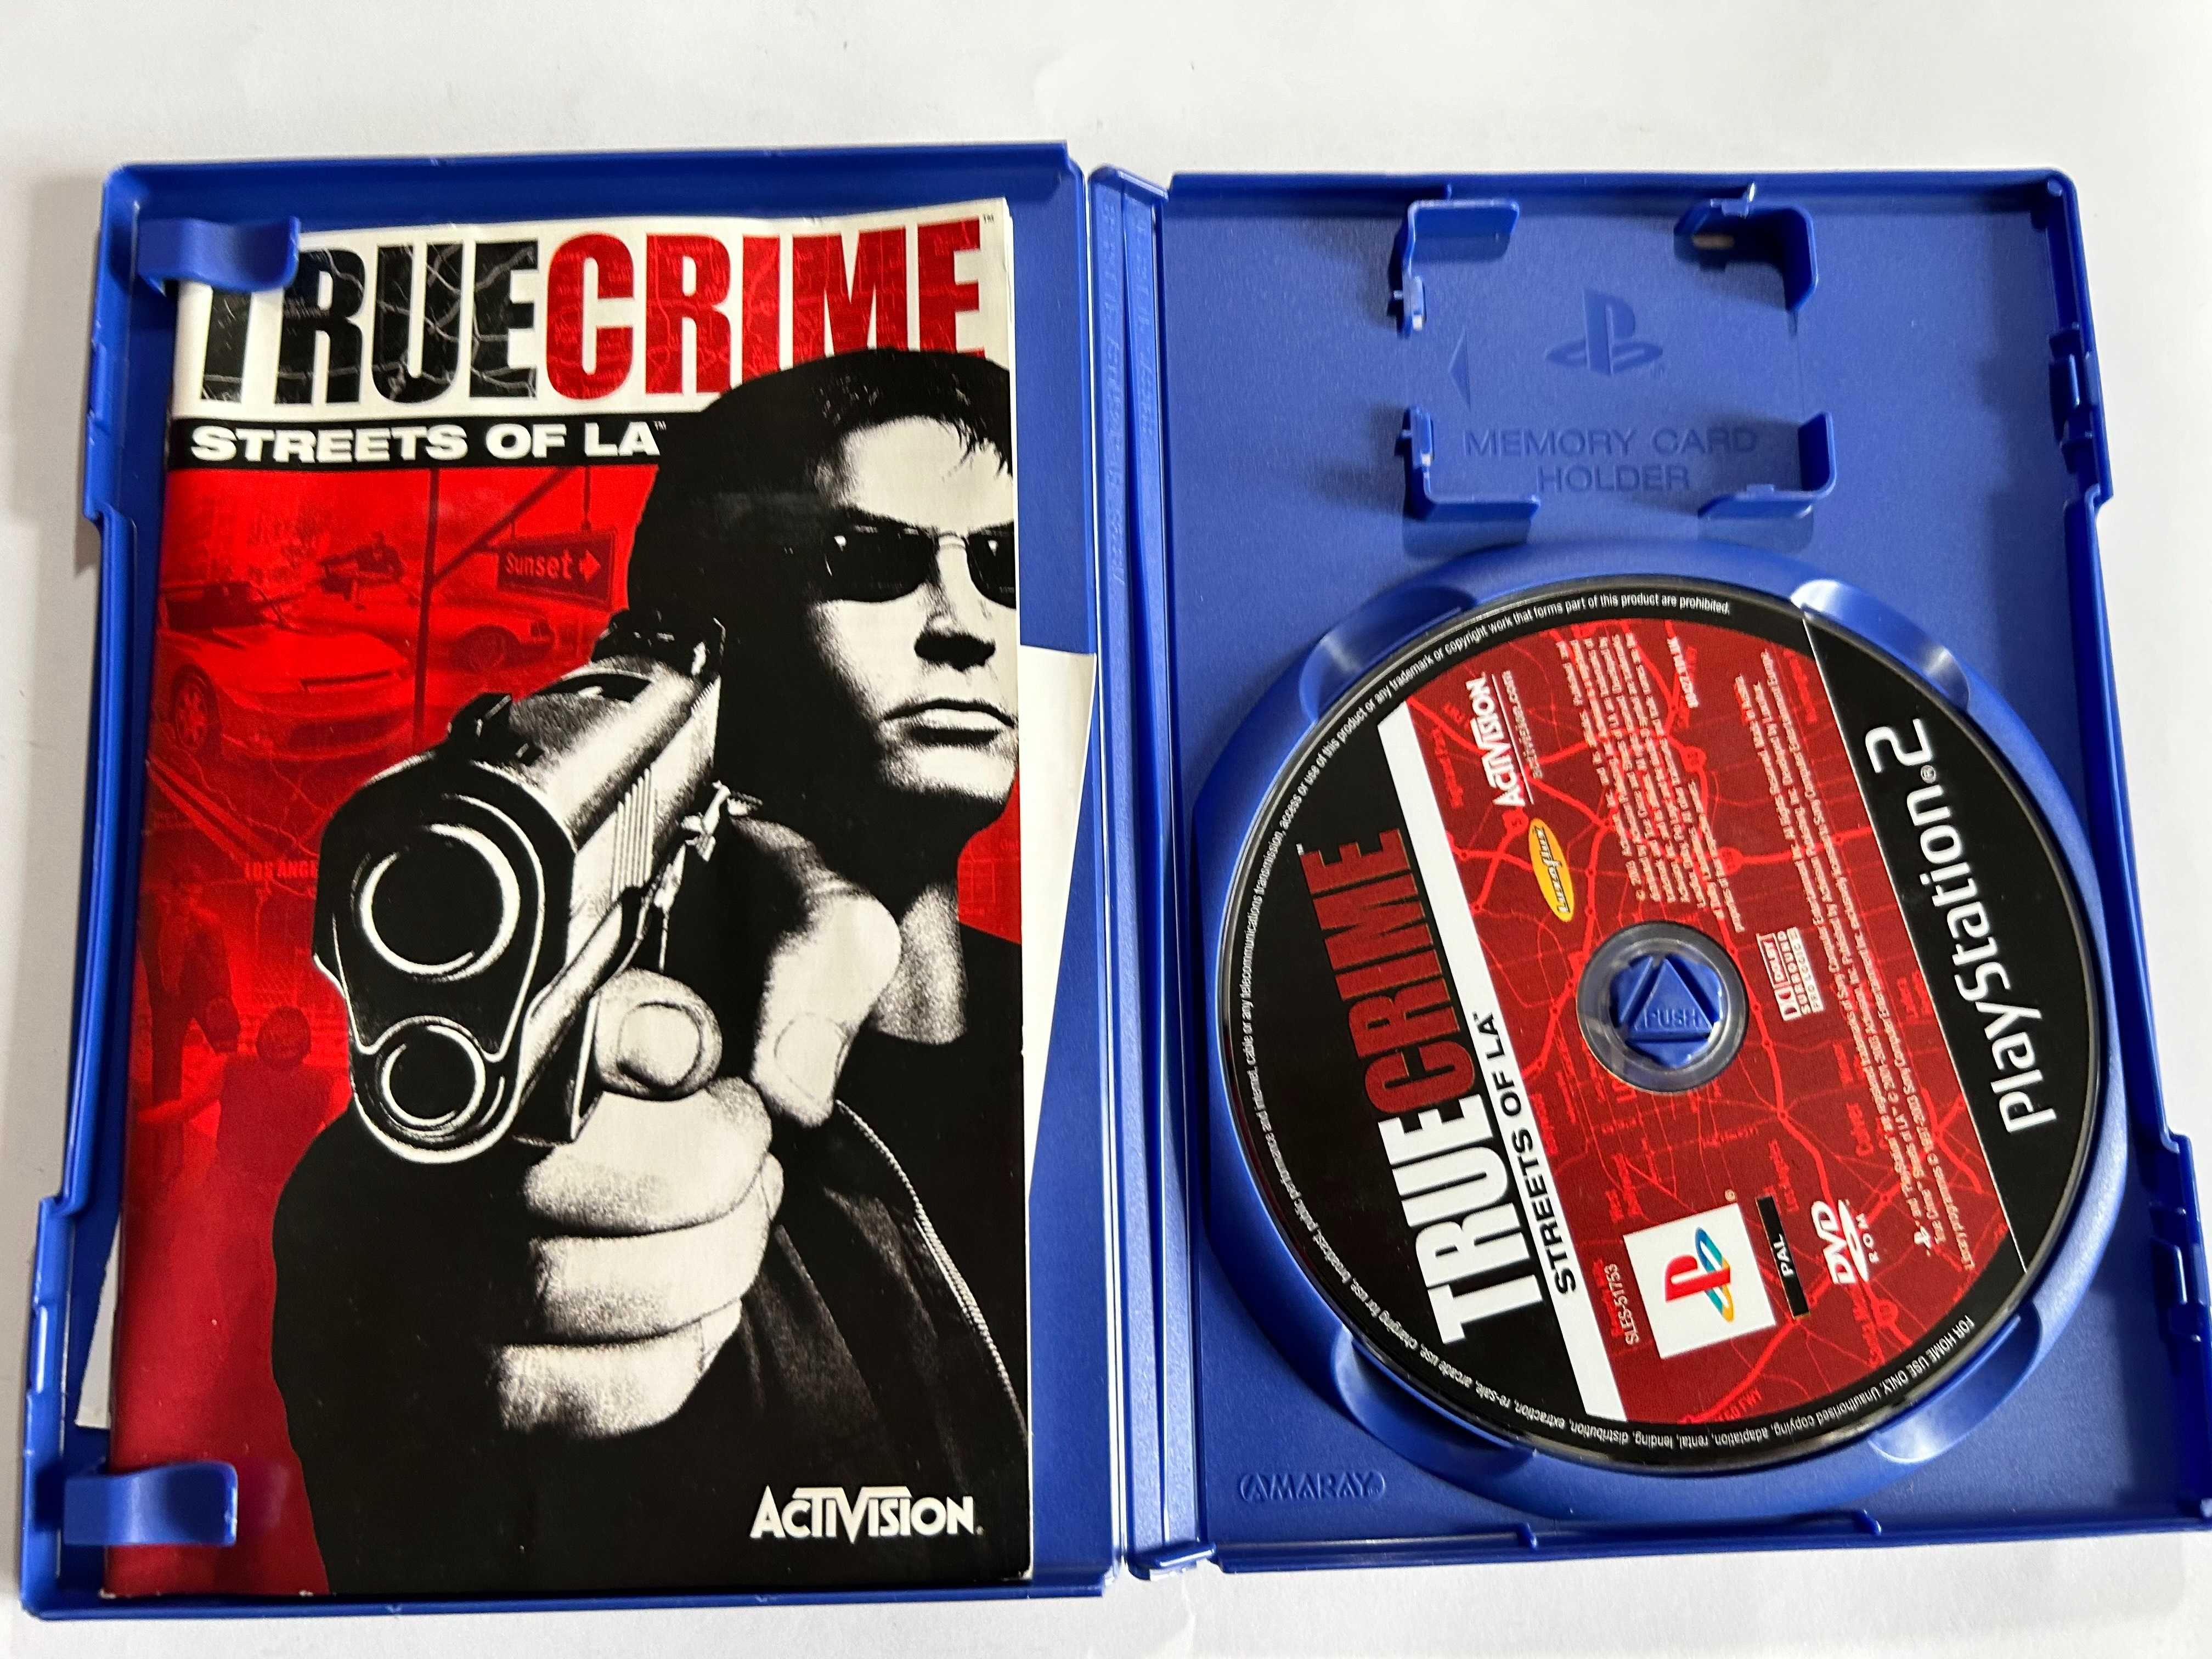 True crime Streets of LA Platinum PS2